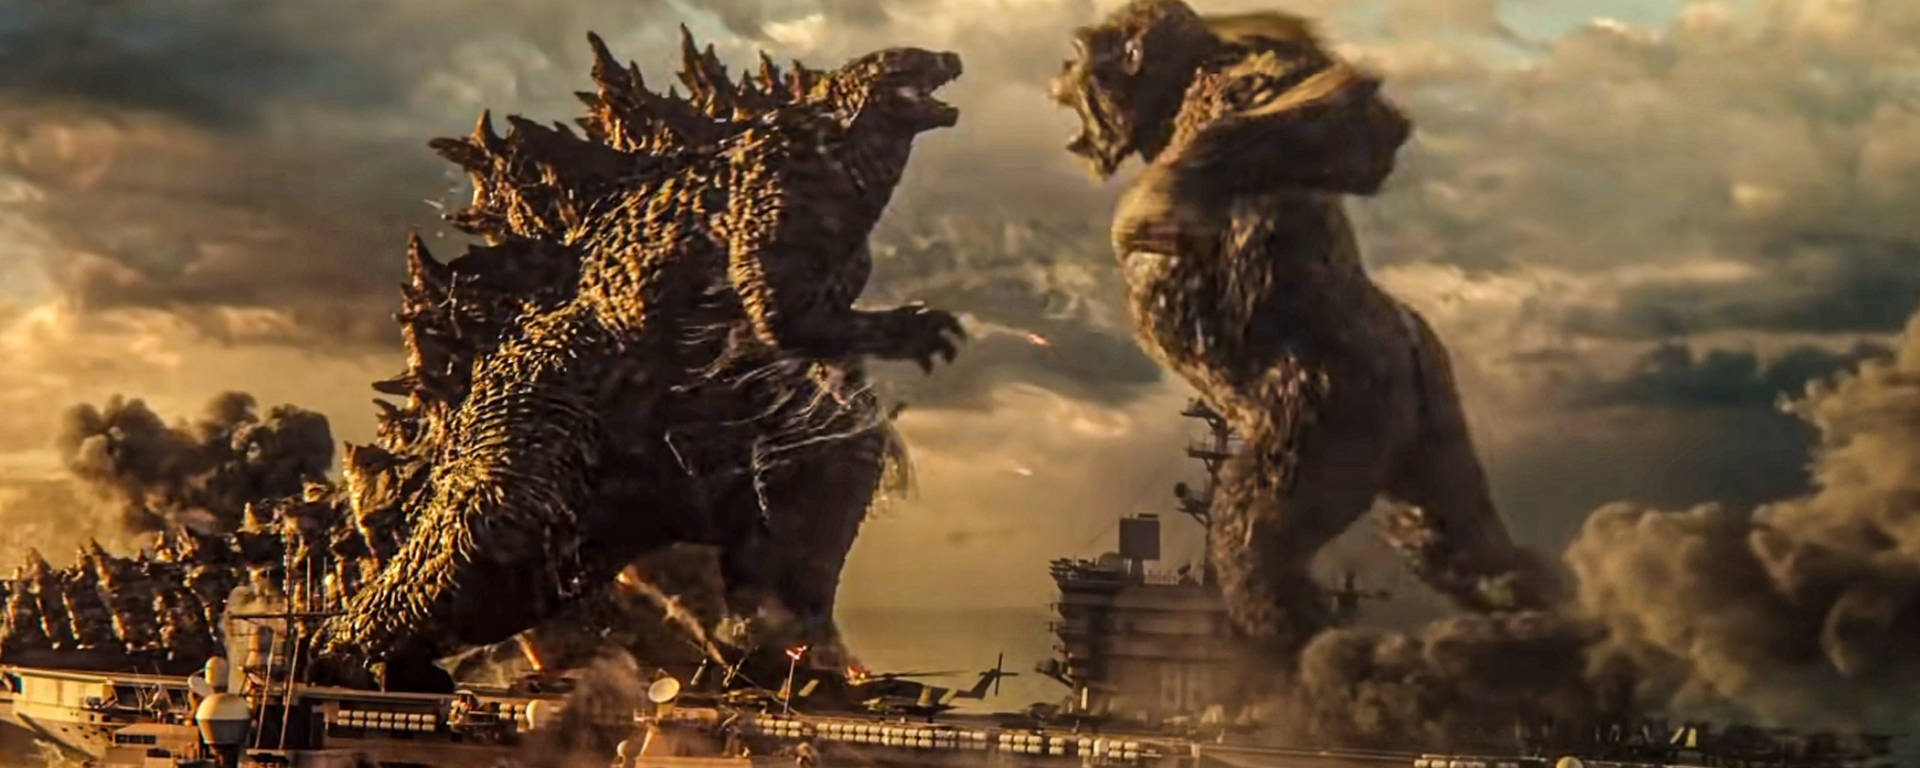 Godzillagegen King Kong Wallpaper